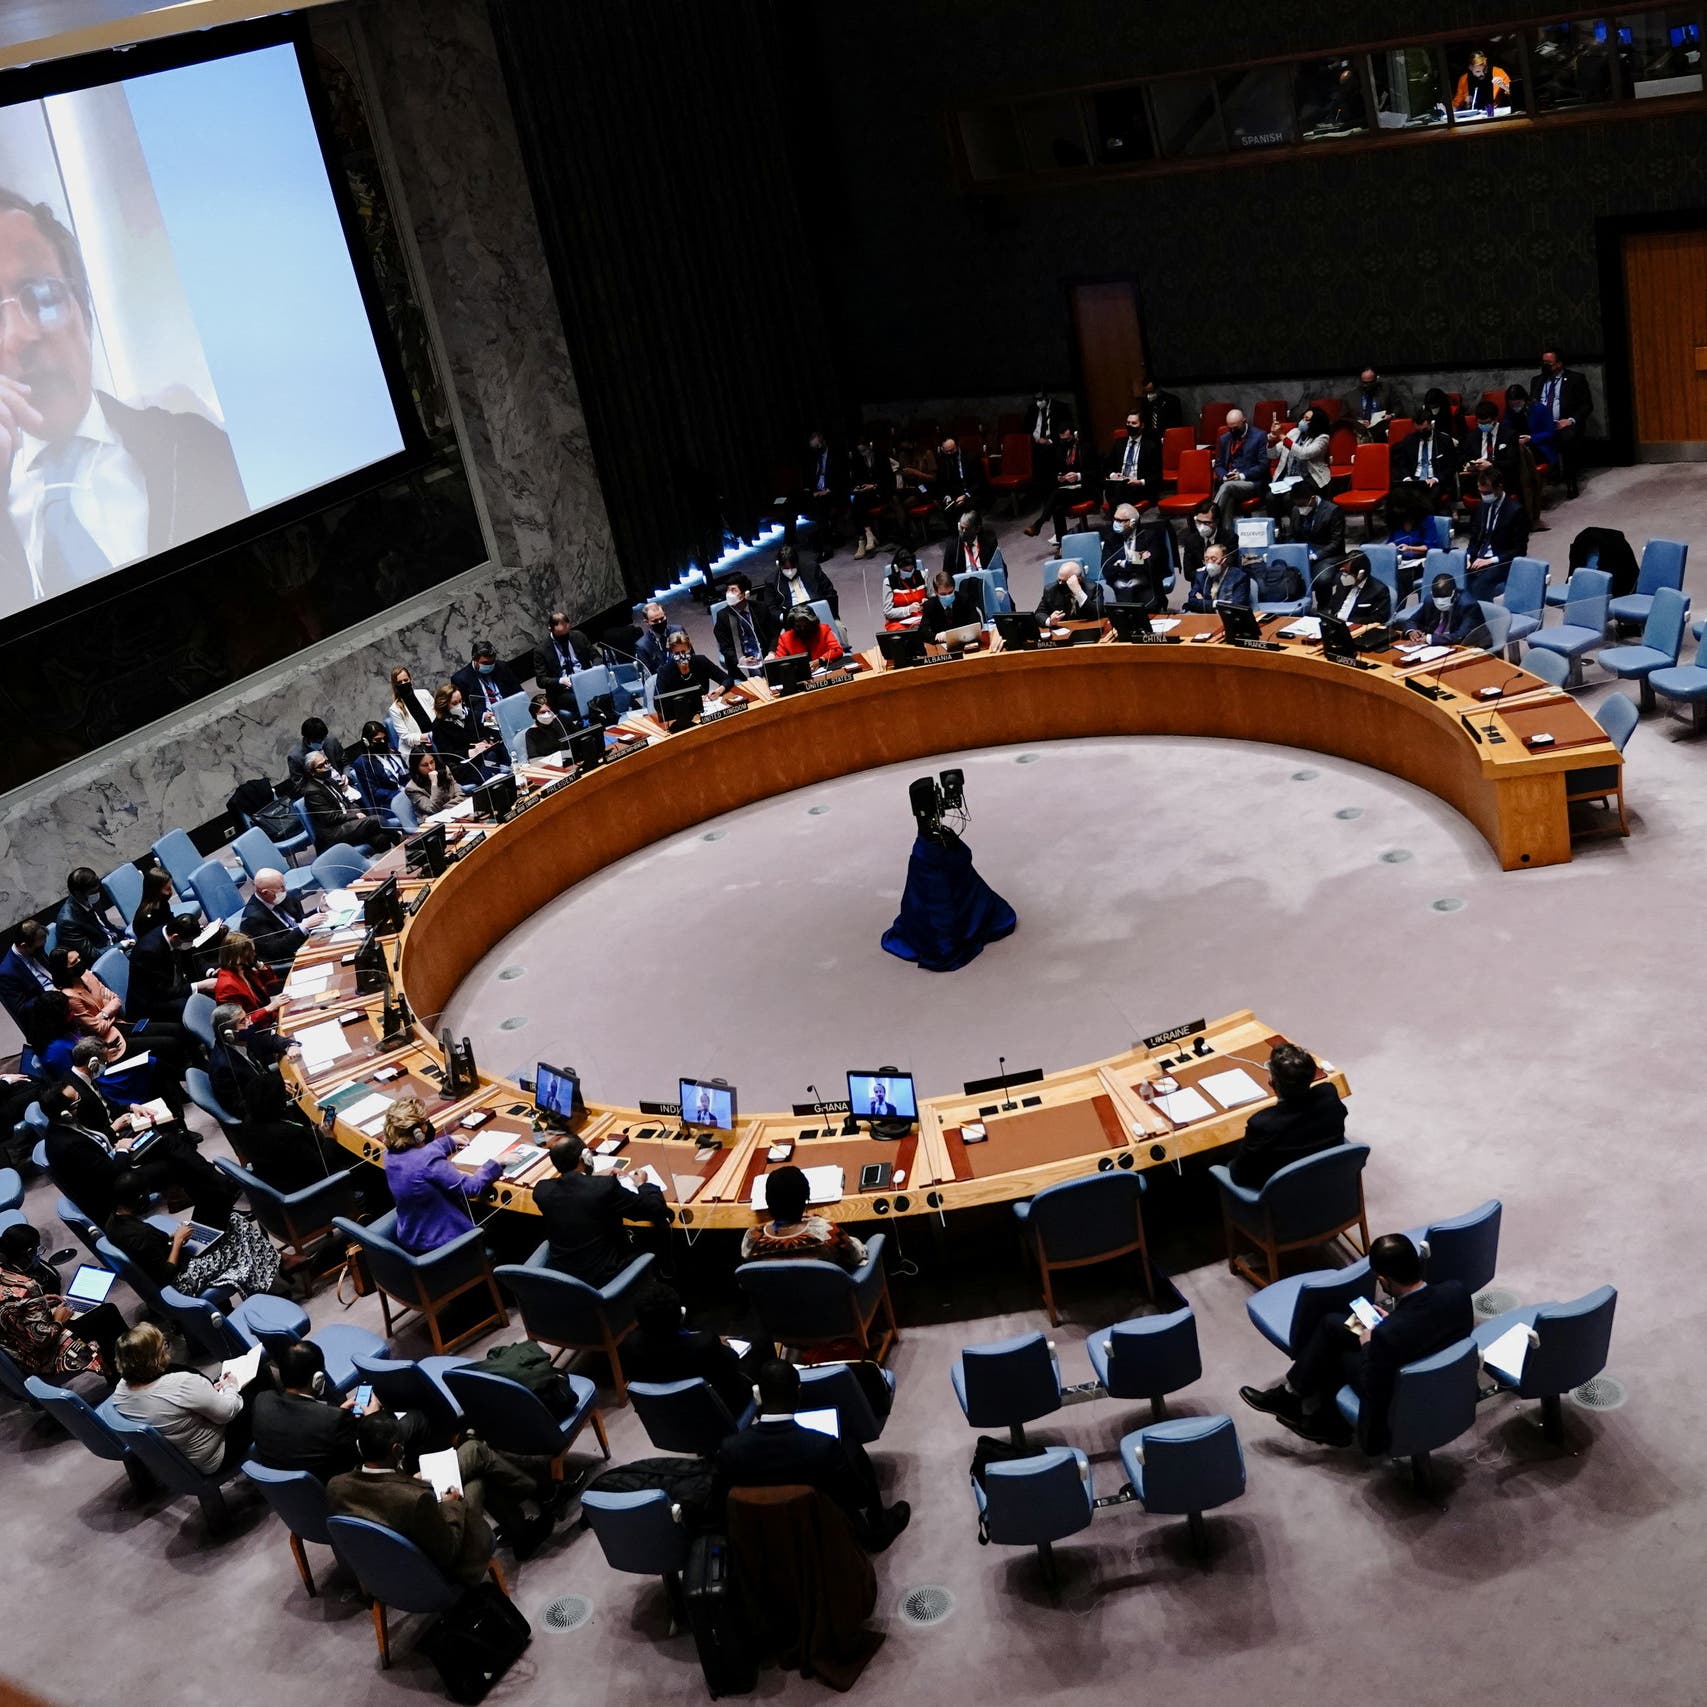 الأمم المتحدة تختار 3 خبراء للتحقيق بجرائم حرب محتملة بأوكرانيا 